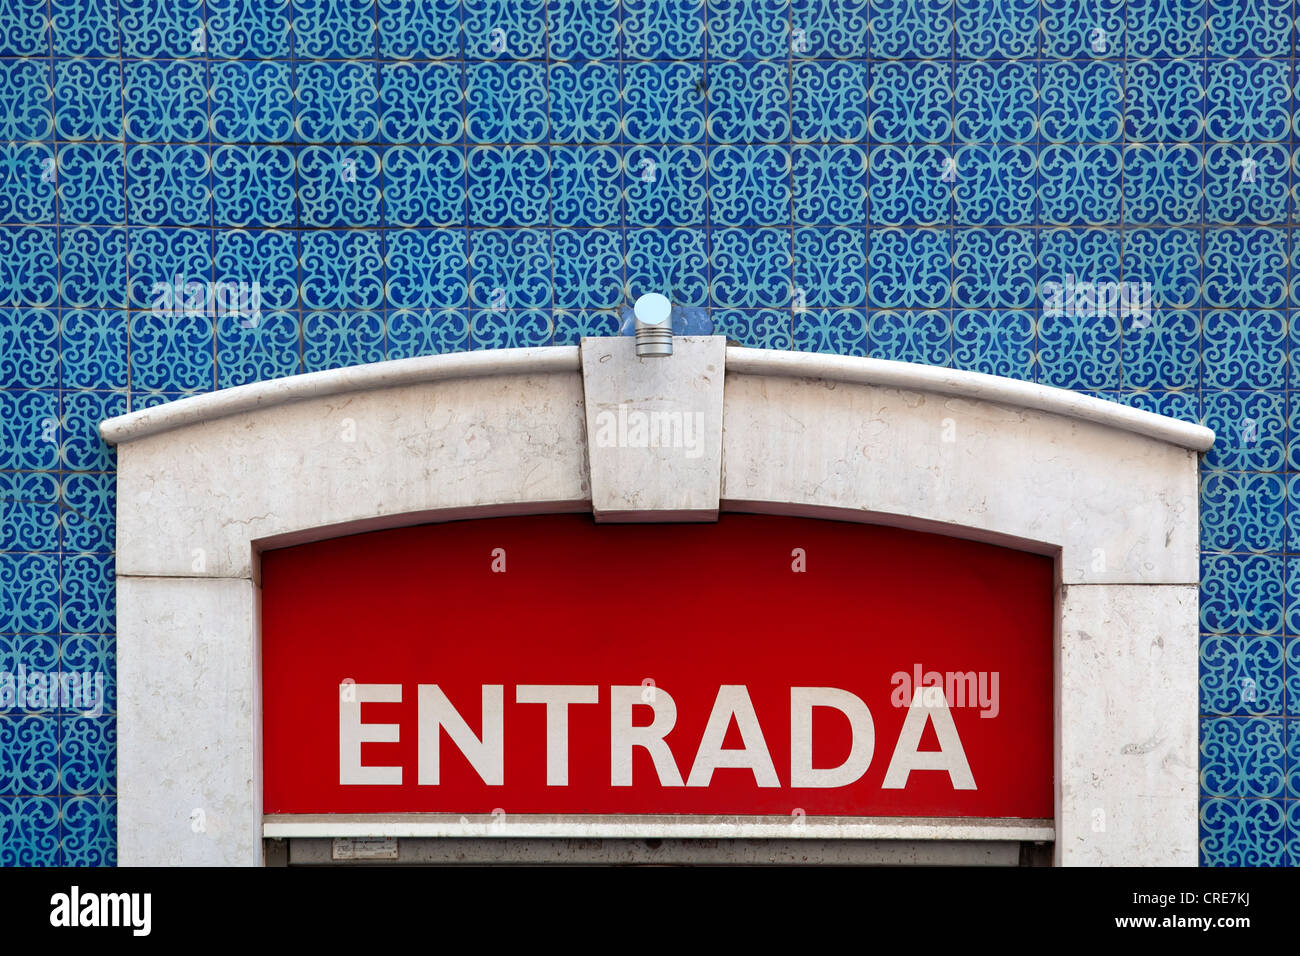 Entrada, panneau d'entrée sur un mur carrelé dans le quartier historique de Baixa à Lisbonne, Portugal, Europe Banque D'Images